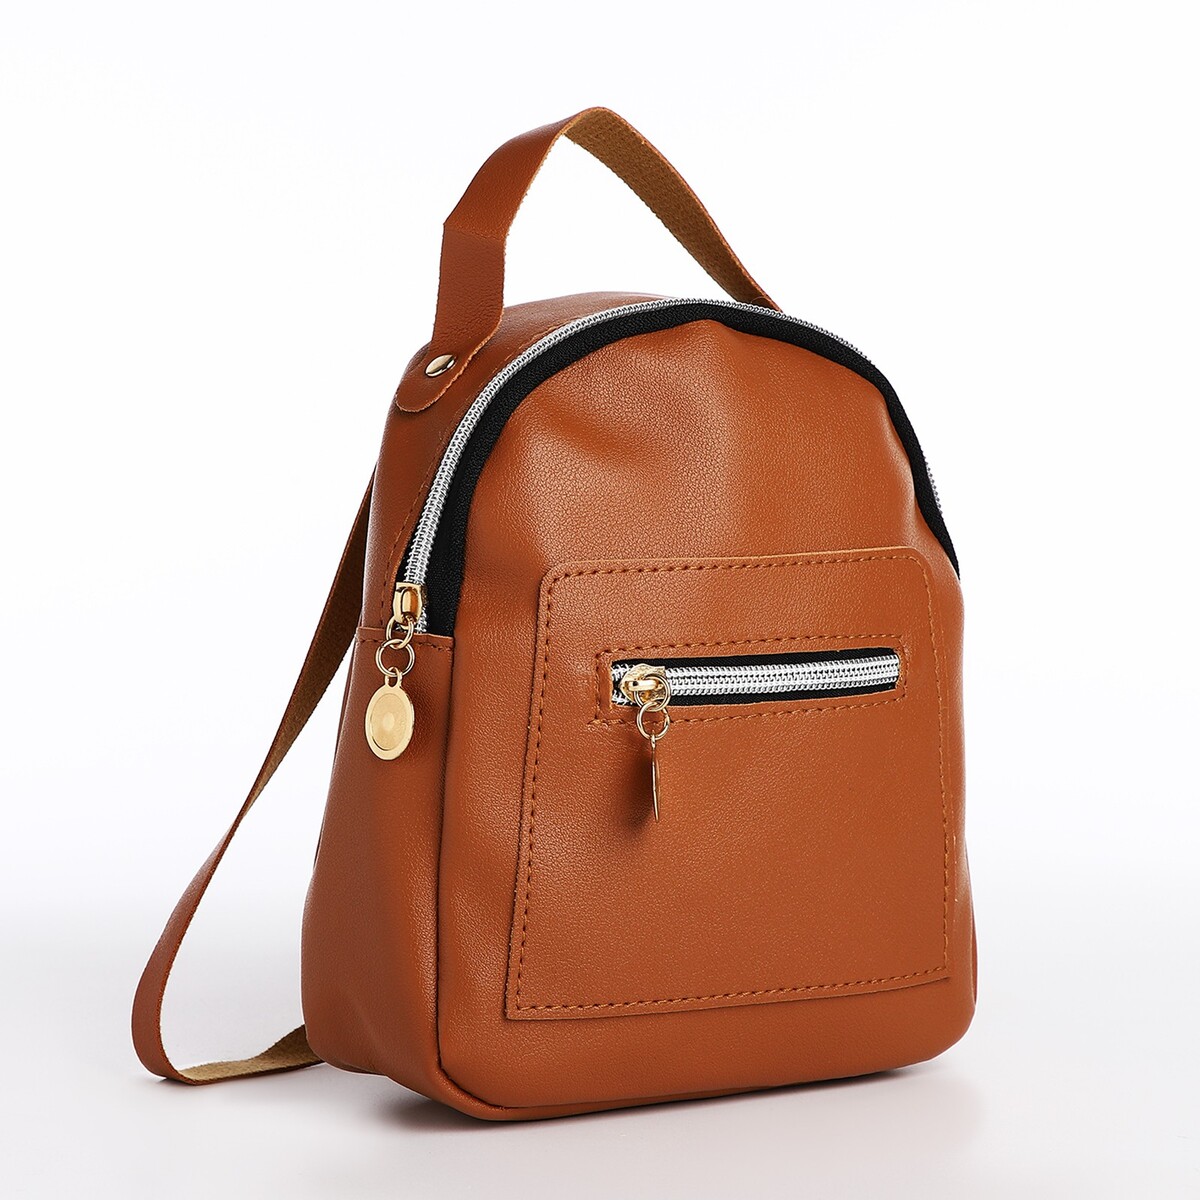 Мини-рюкзак женский из искусственной кожи на молнии, 1 карман, цвет коричневый рюкзак школьный из текстиля на молнии наружный карман коричневый